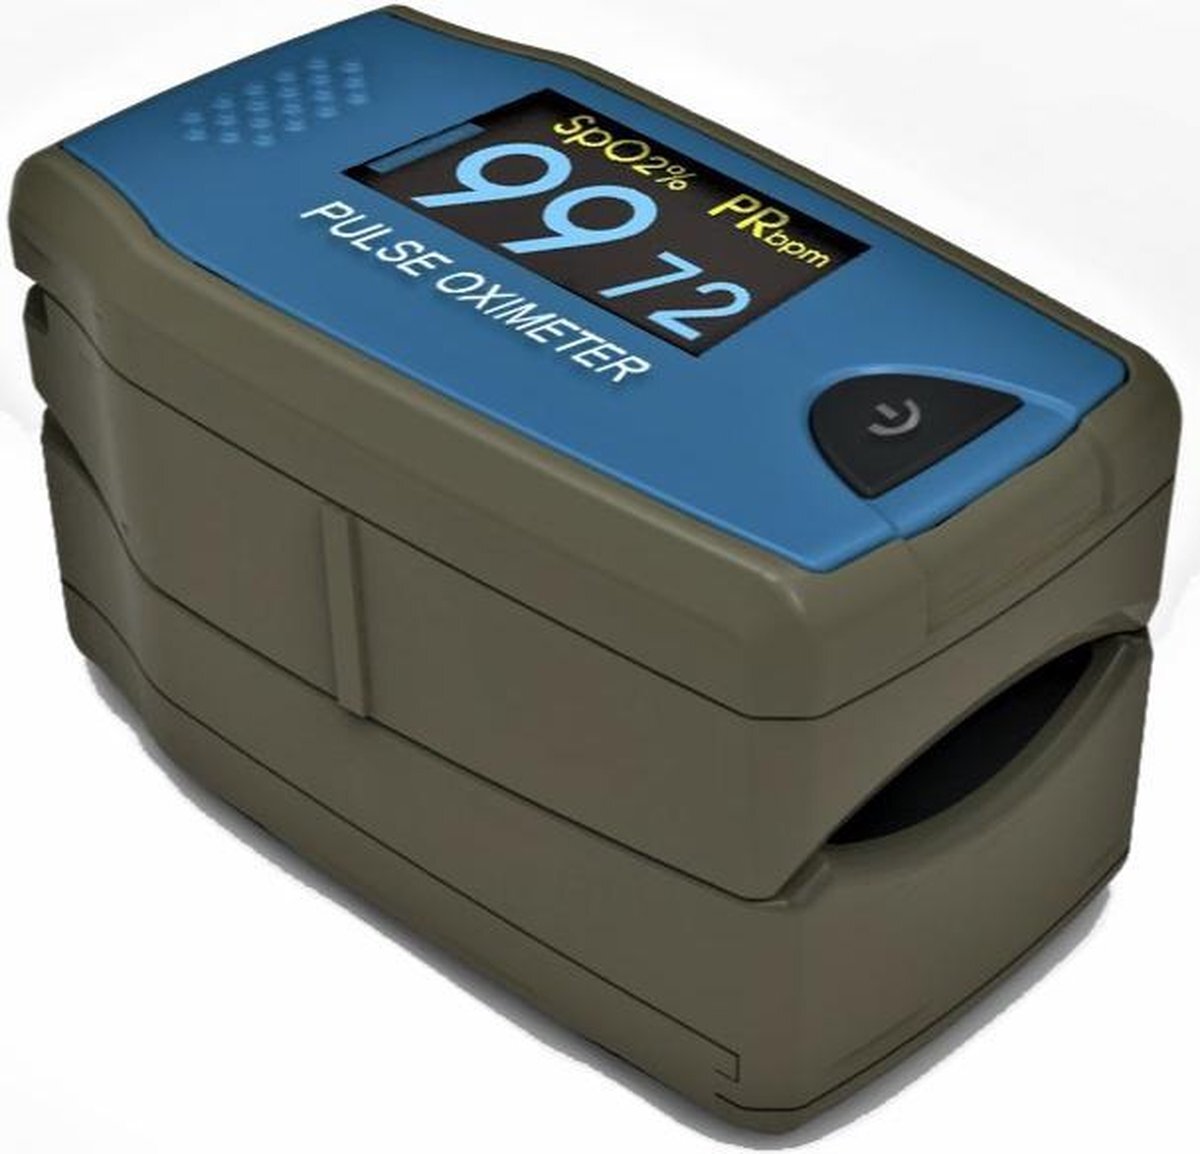 Choicemmed C5 -Digitale Fingertip Pulse Oximeter - Saturatiemeter - Zuurstofmeter - Hartslagmeter - Inclusief opbergetui en koord